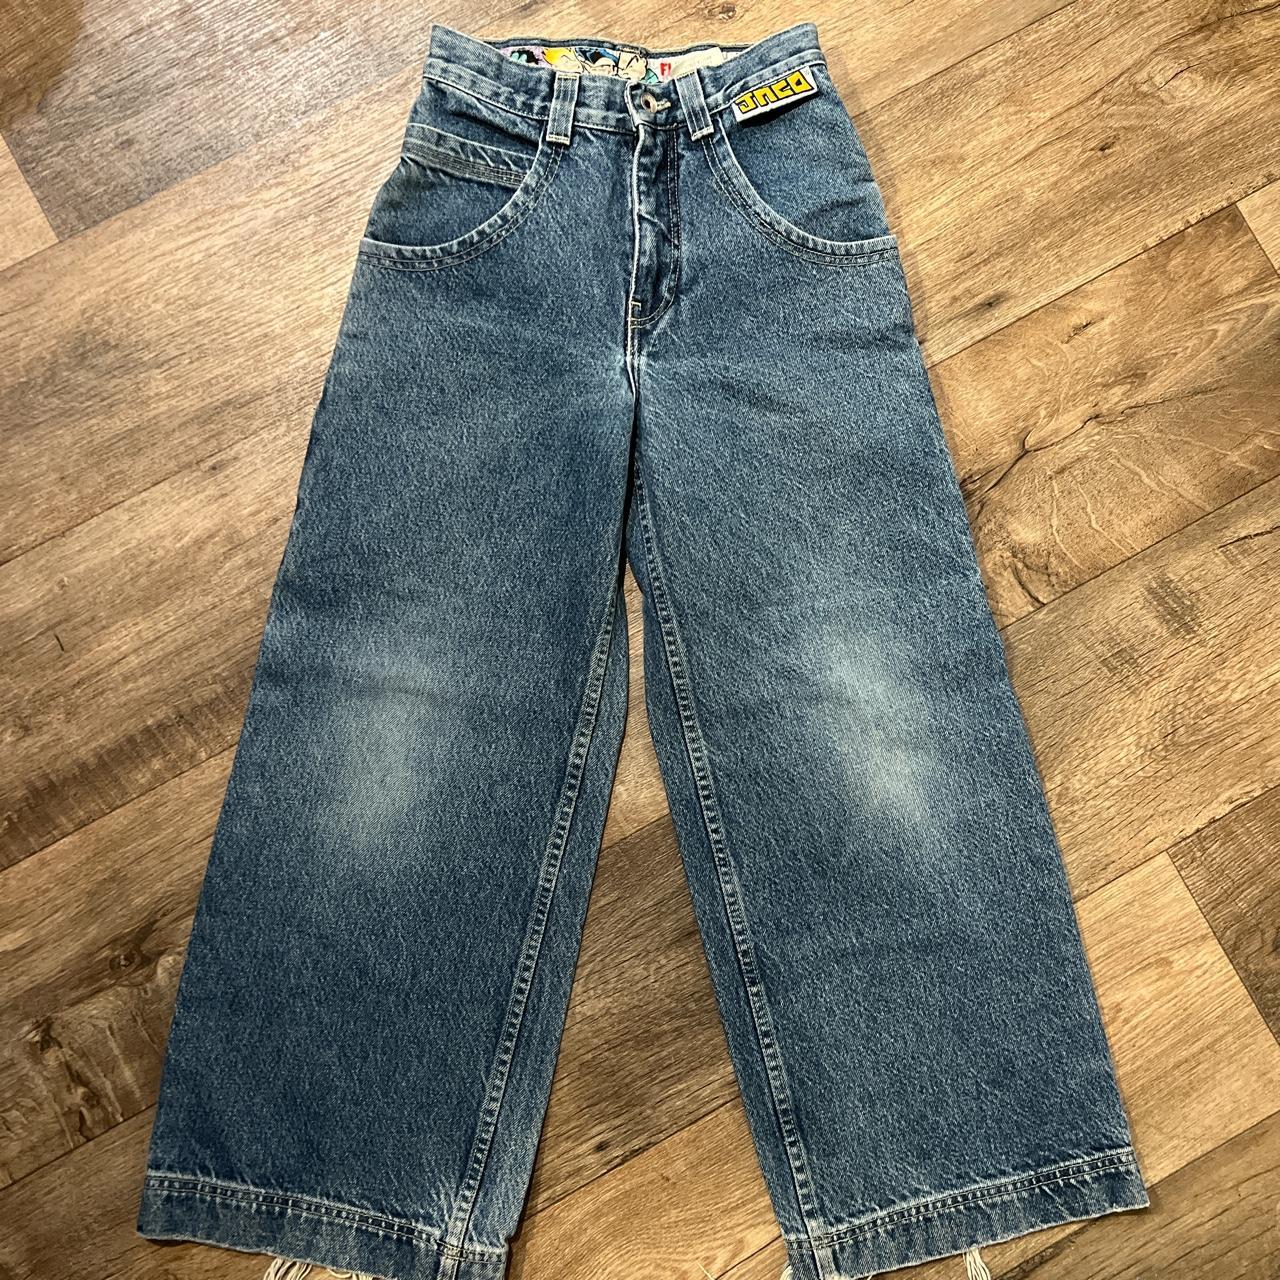 90’s Jnco jeans Sz 10 kids Pretty nice condition... - Depop